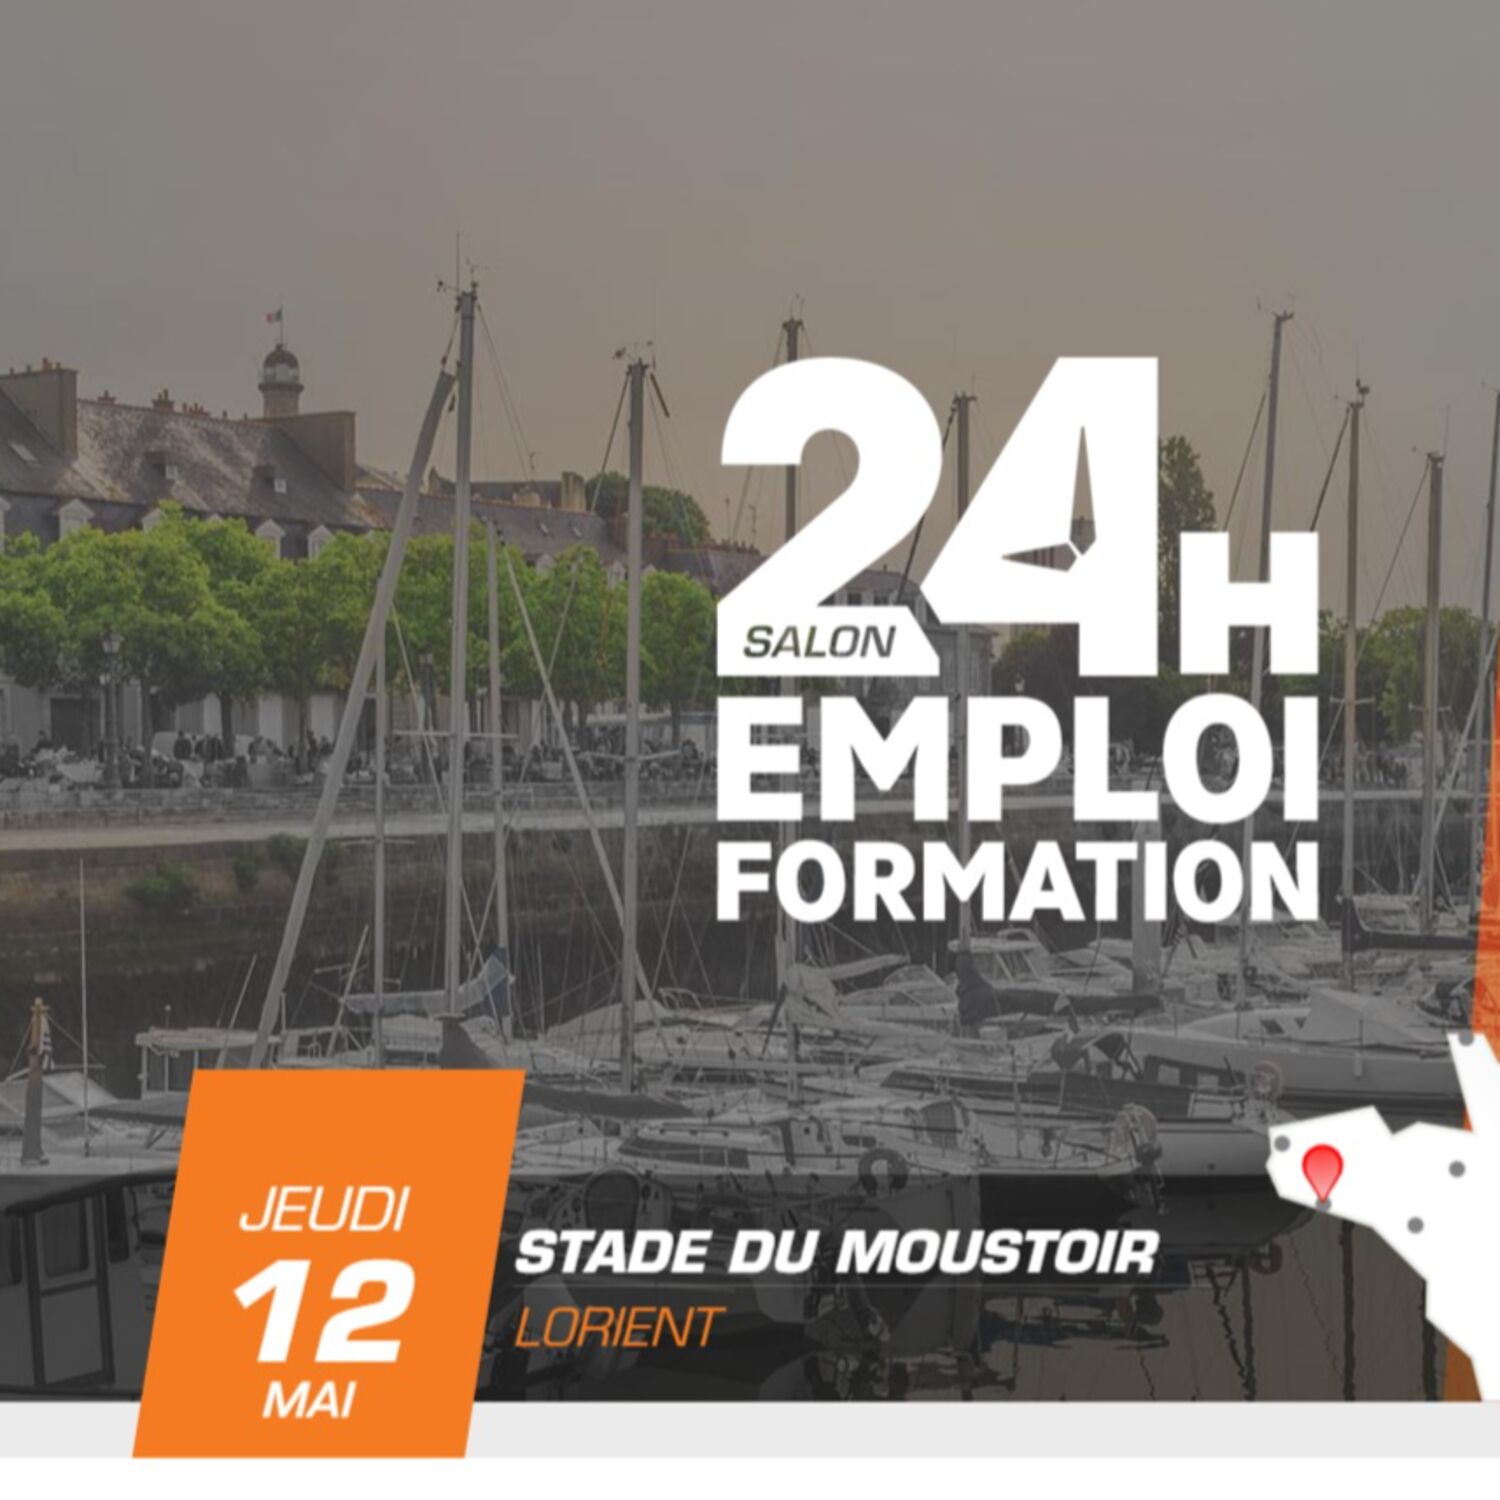 Salon 24H pour l'emploi et la formation à Lorient le jeudi 12 mai